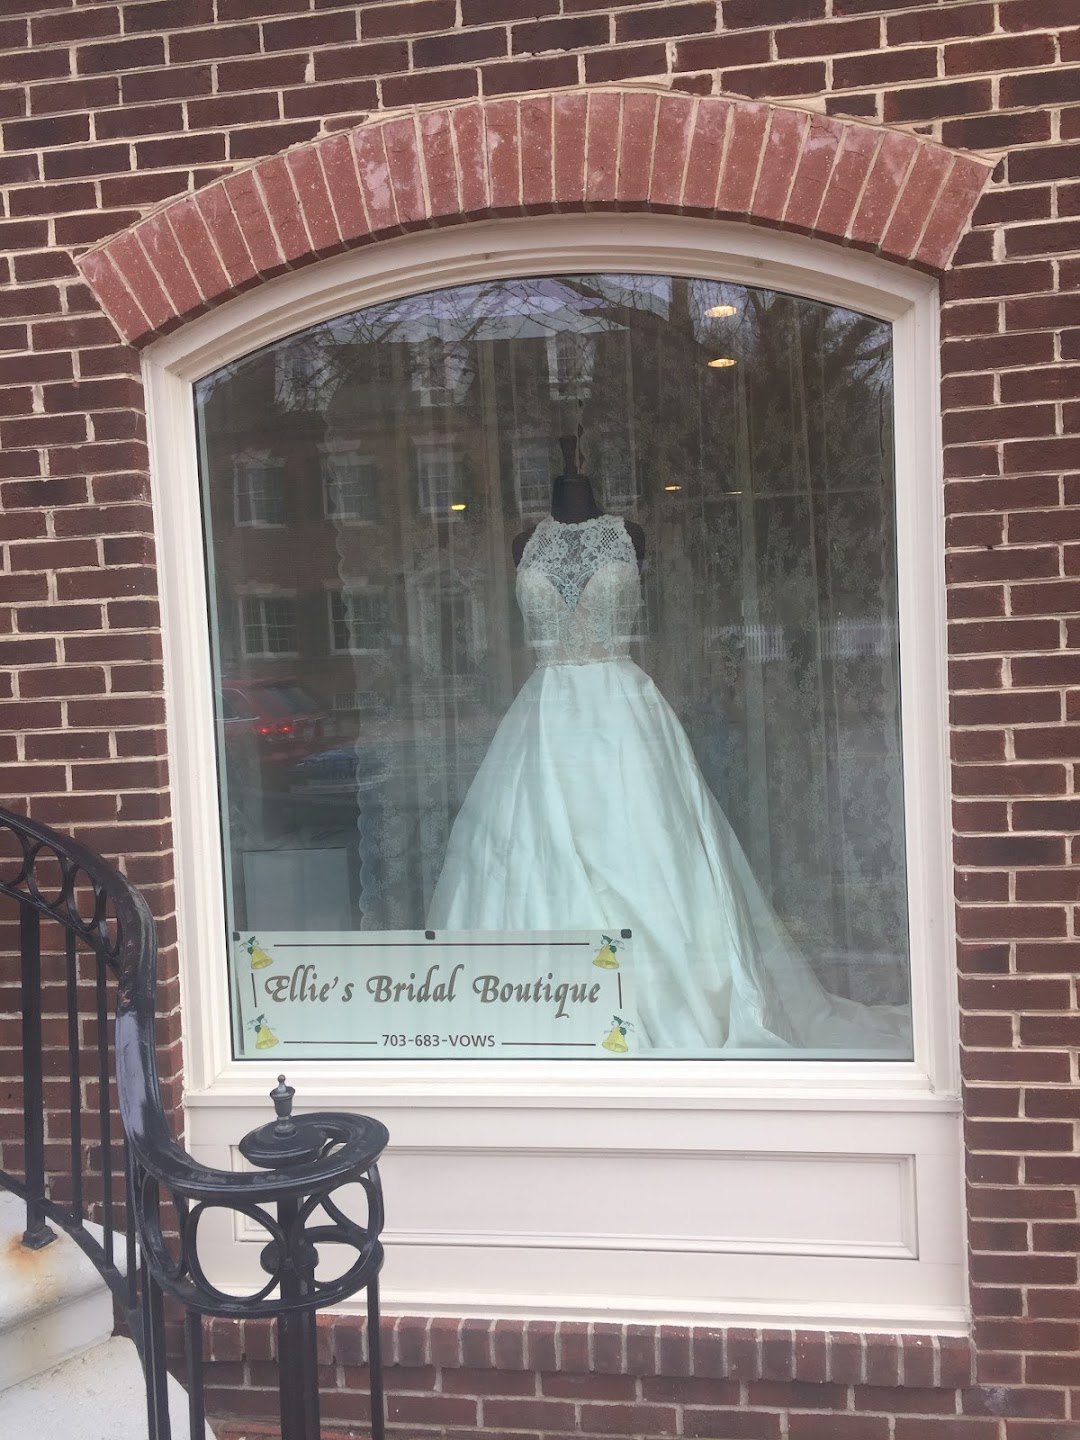 Ellies Bridal Boutique